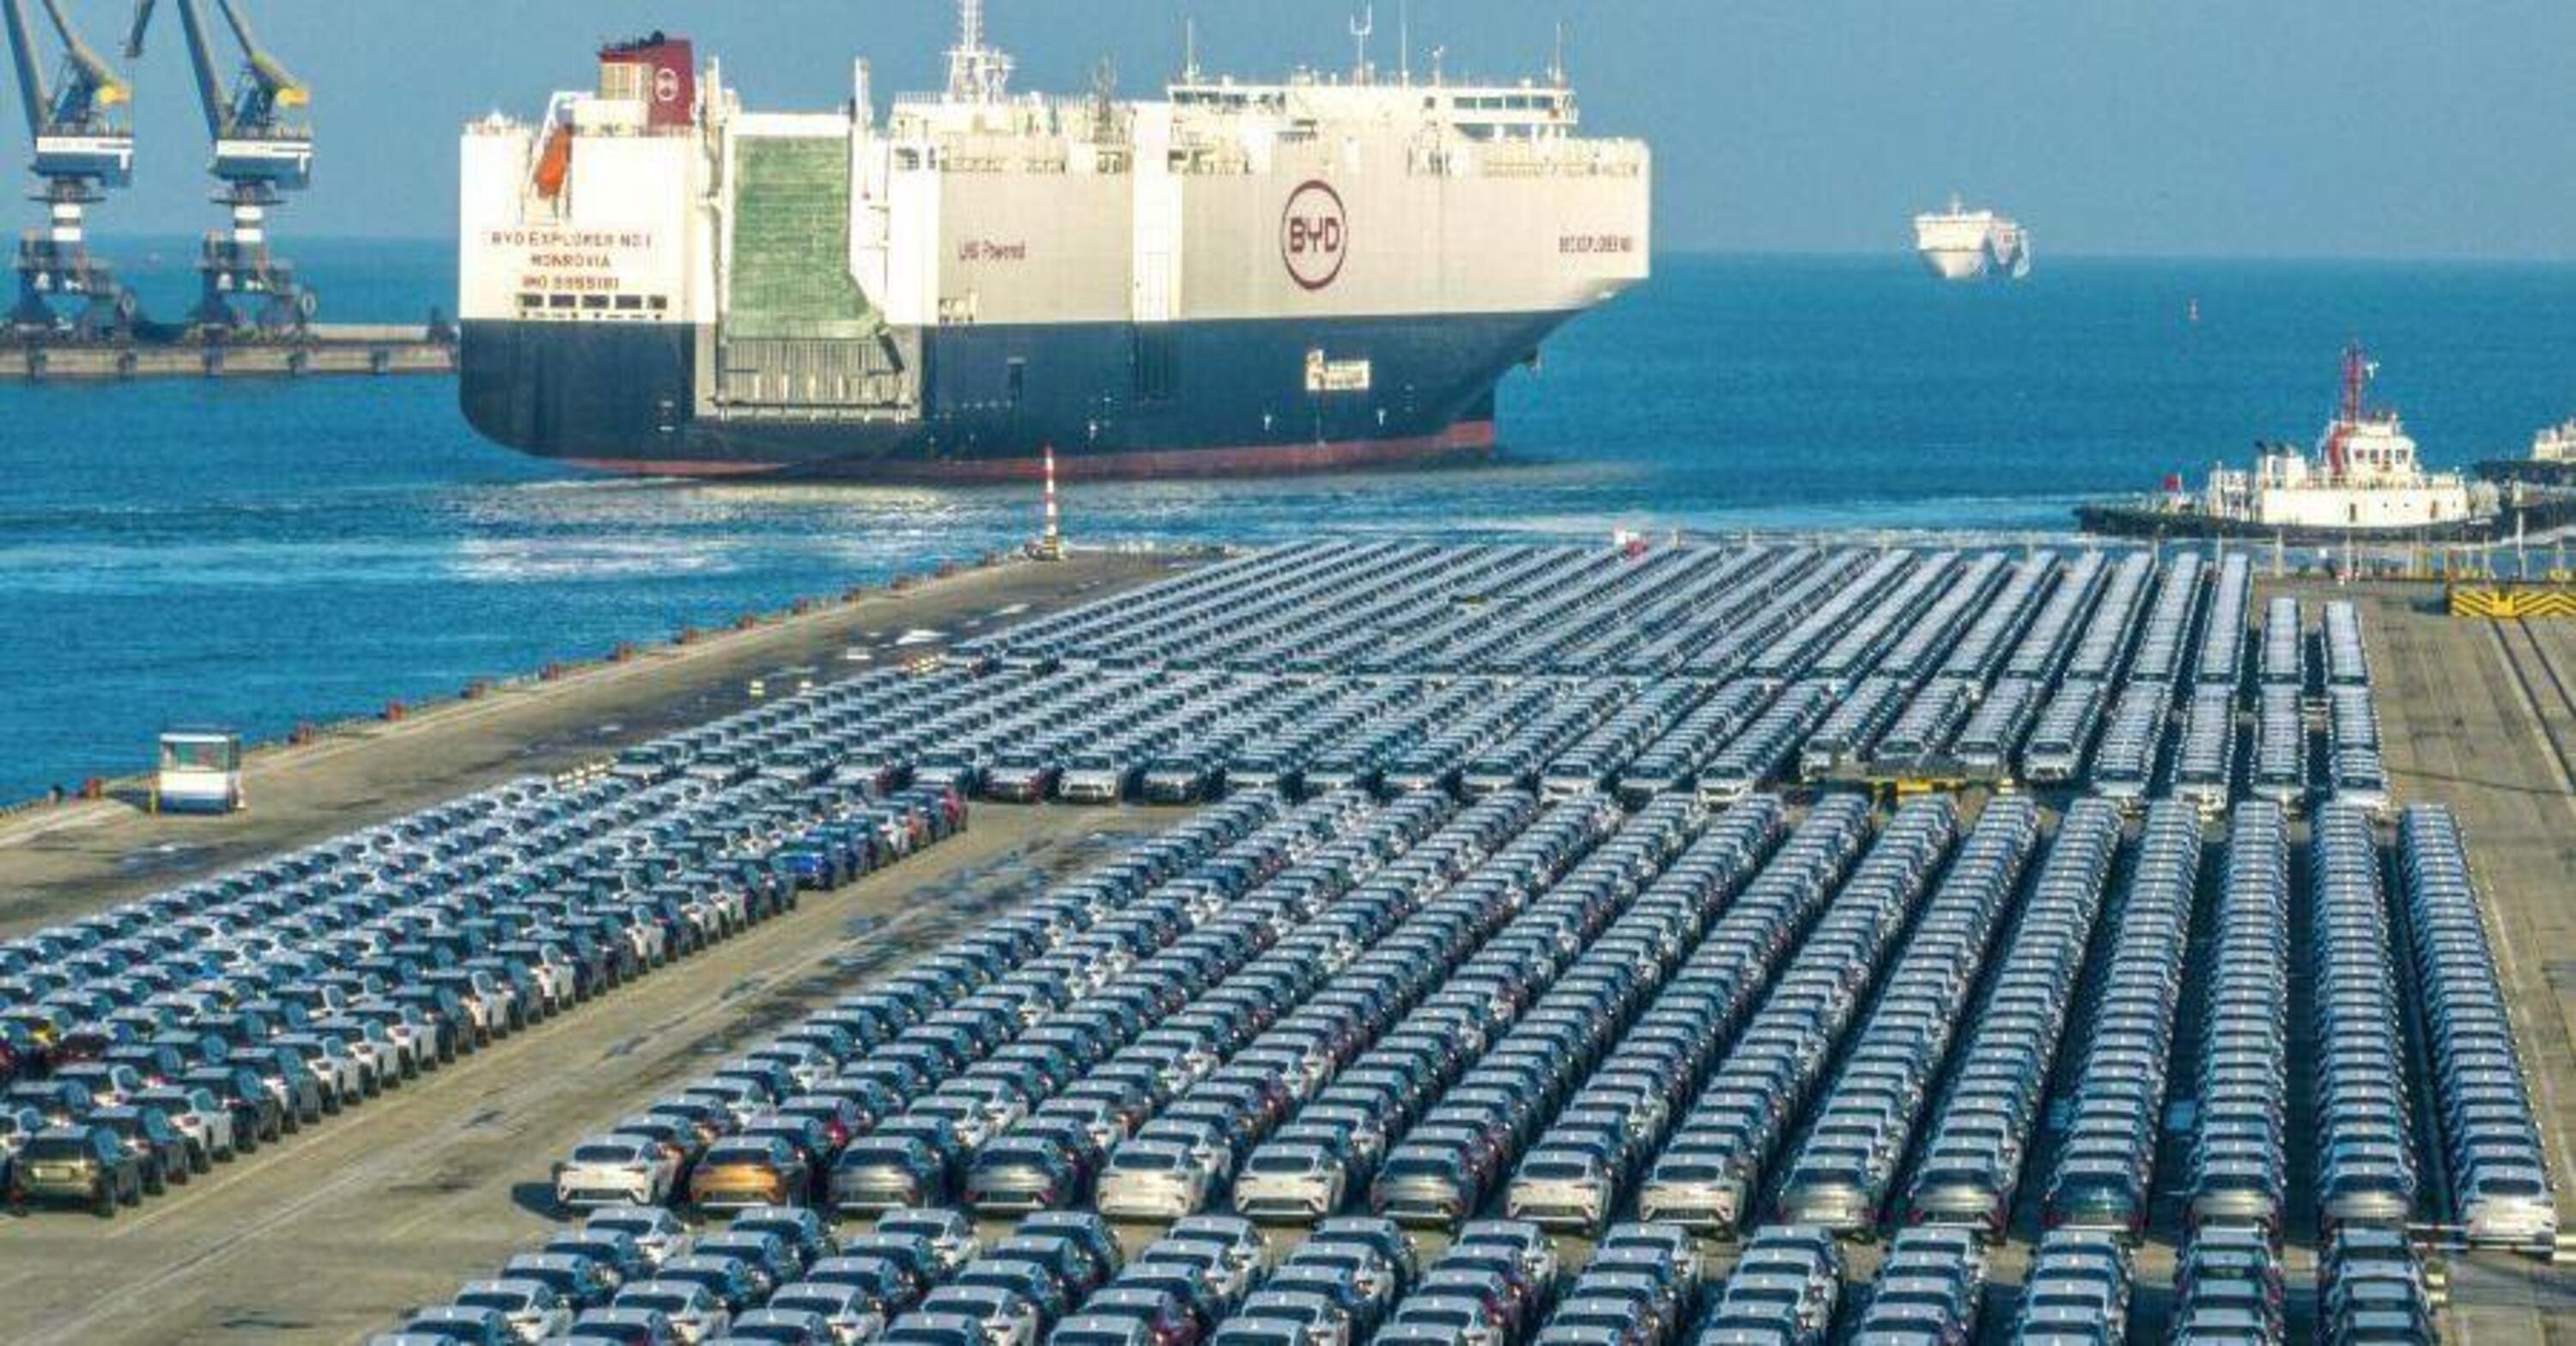 &Egrave; in arrivo un bastimento... 7.000 auto elettriche BYD stanno per sbarcare in Europa da una nave Ro-ro. Ma com&#039;&egrave; fatta? 